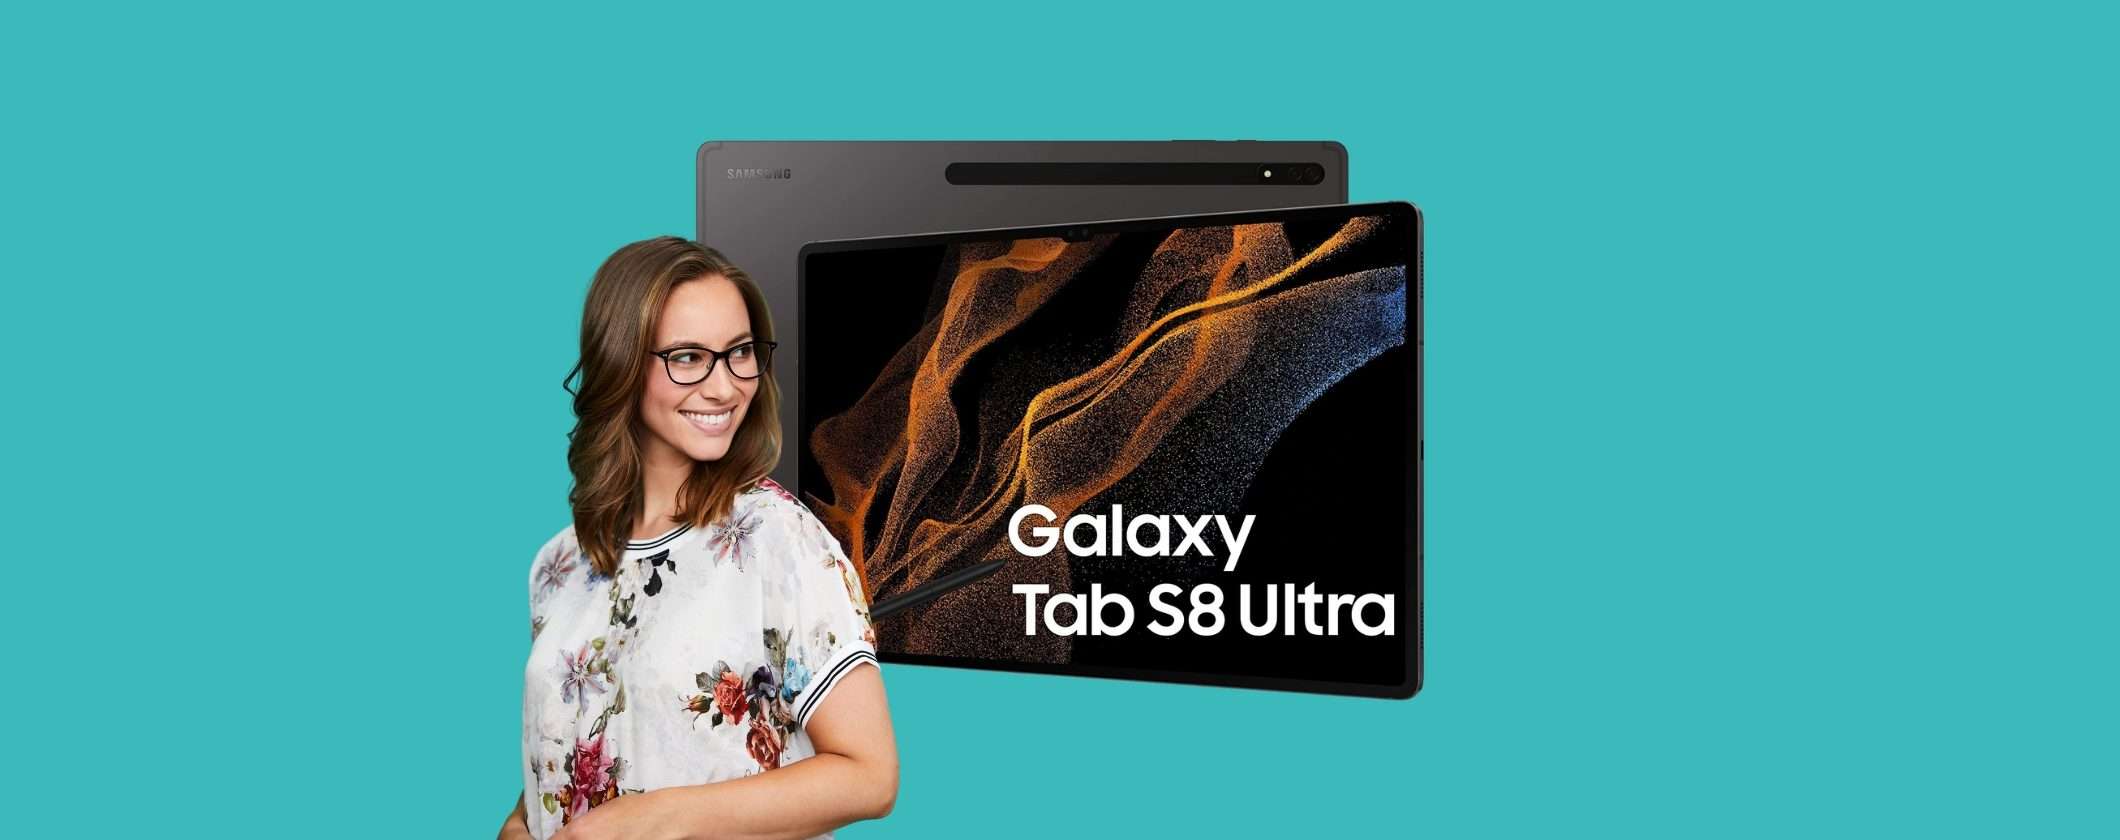 Samsung Galaxy Tab S8 Ultra: MINIMO STORICO su Amazon